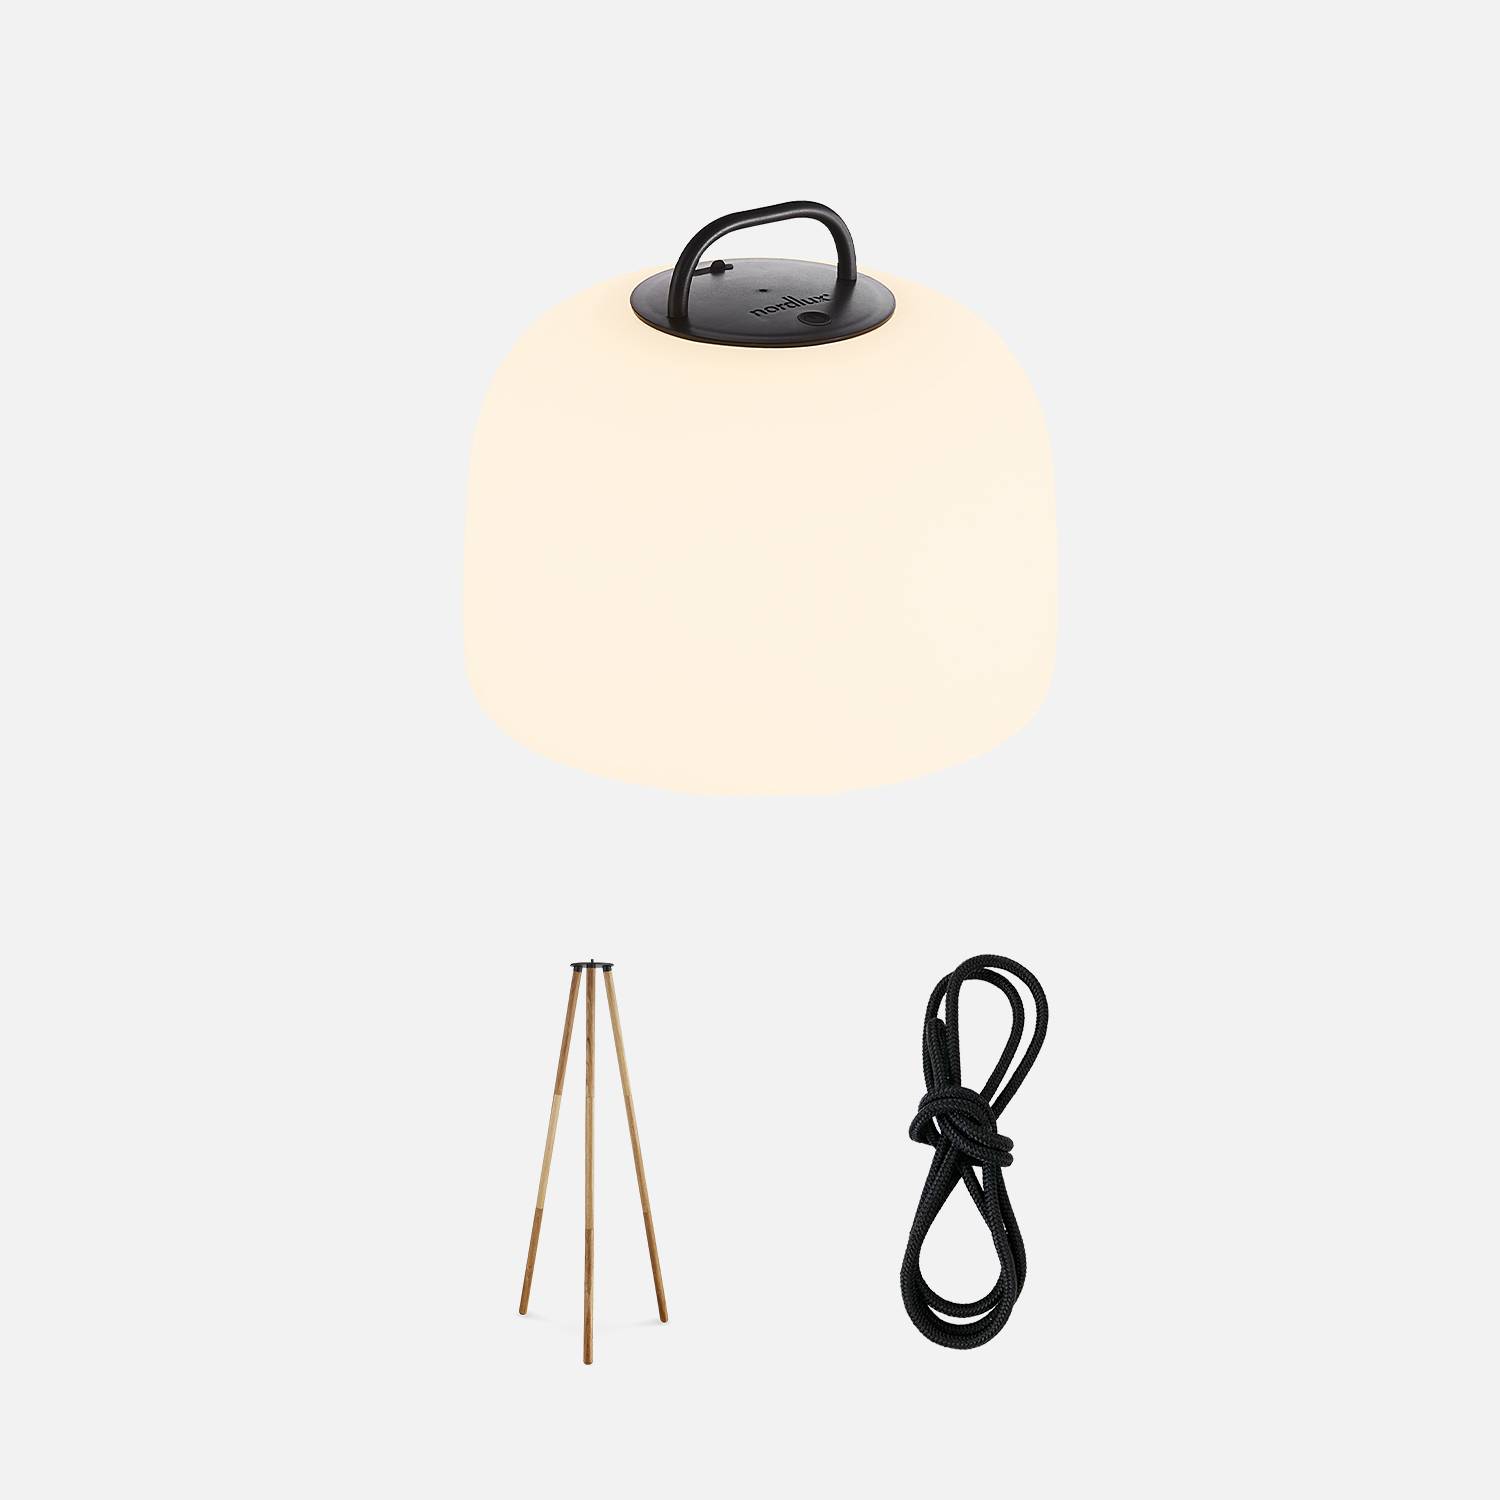 Lampada LED per interni 3 in 1 - TRIPADA XL - lampada in plastica con piedini in legno di gomma, Ø36cm ricaricabile, da appendere, con treppiede da 1m e corda Photo2